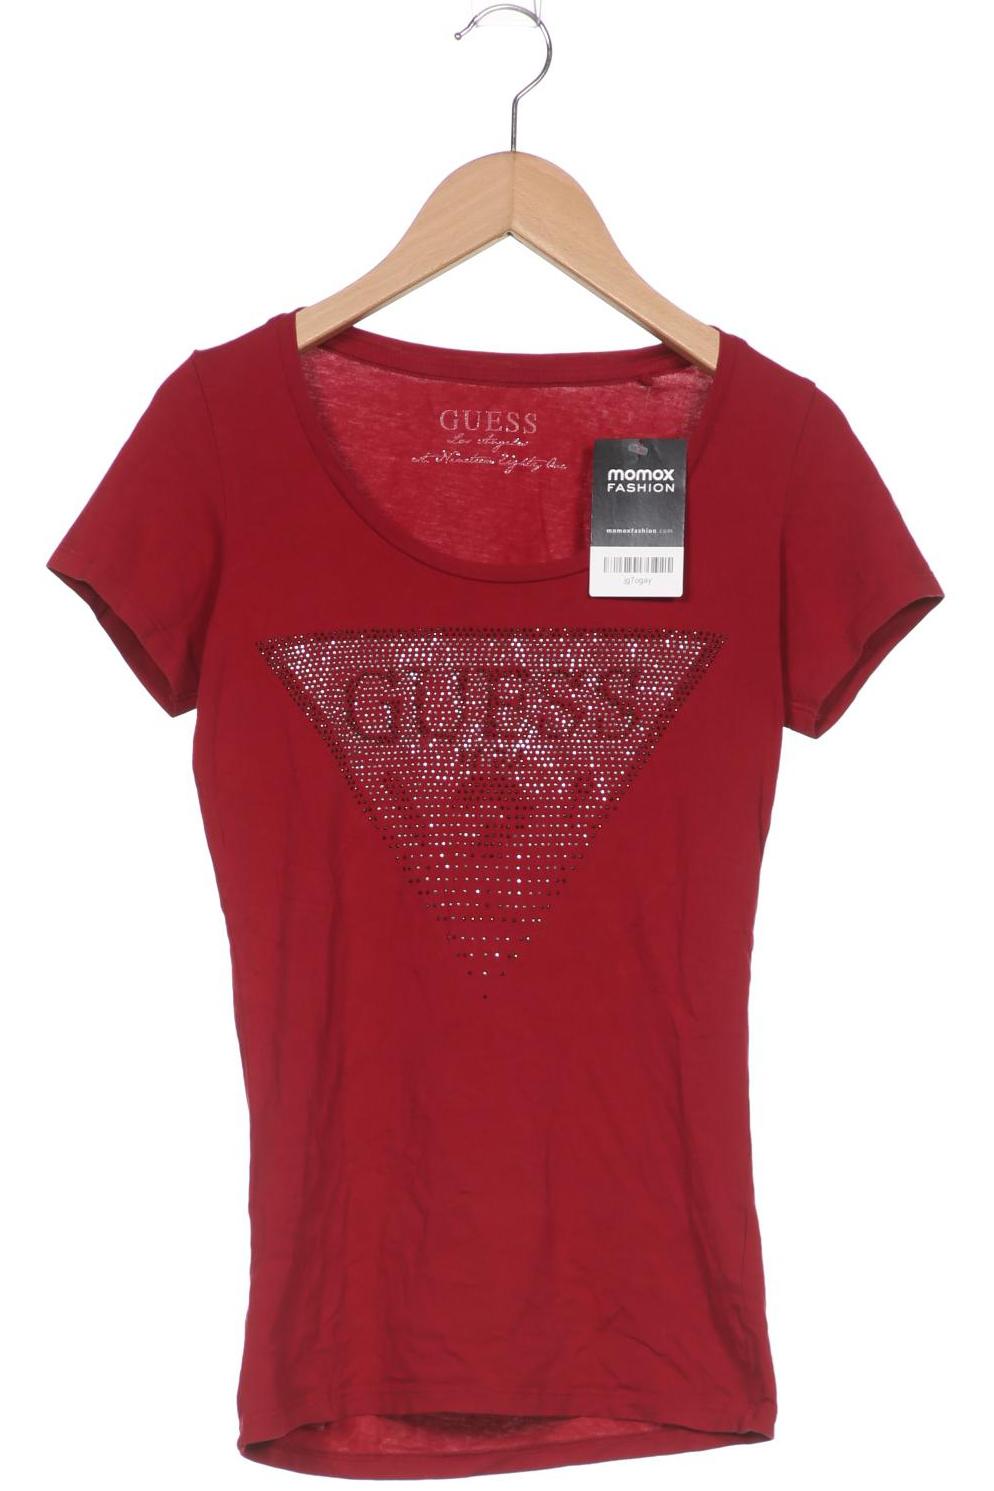 GUESS Damen T-Shirt, rot von Guess